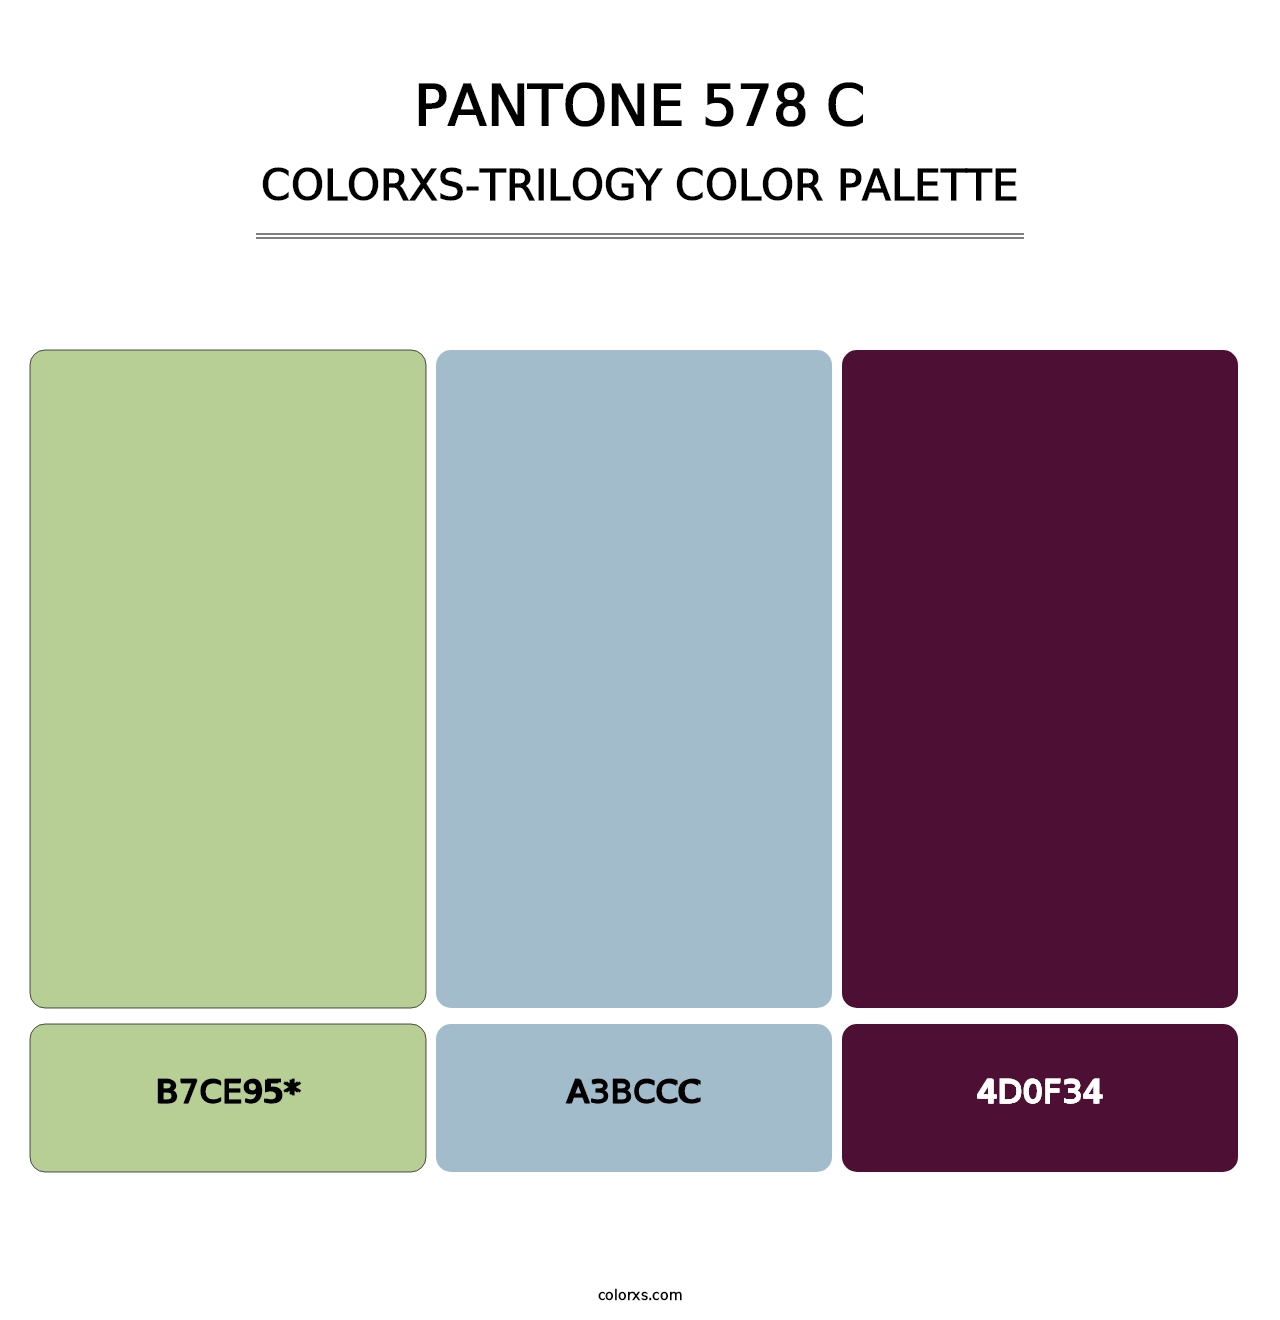 PANTONE 578 C - Colorxs Trilogy Palette